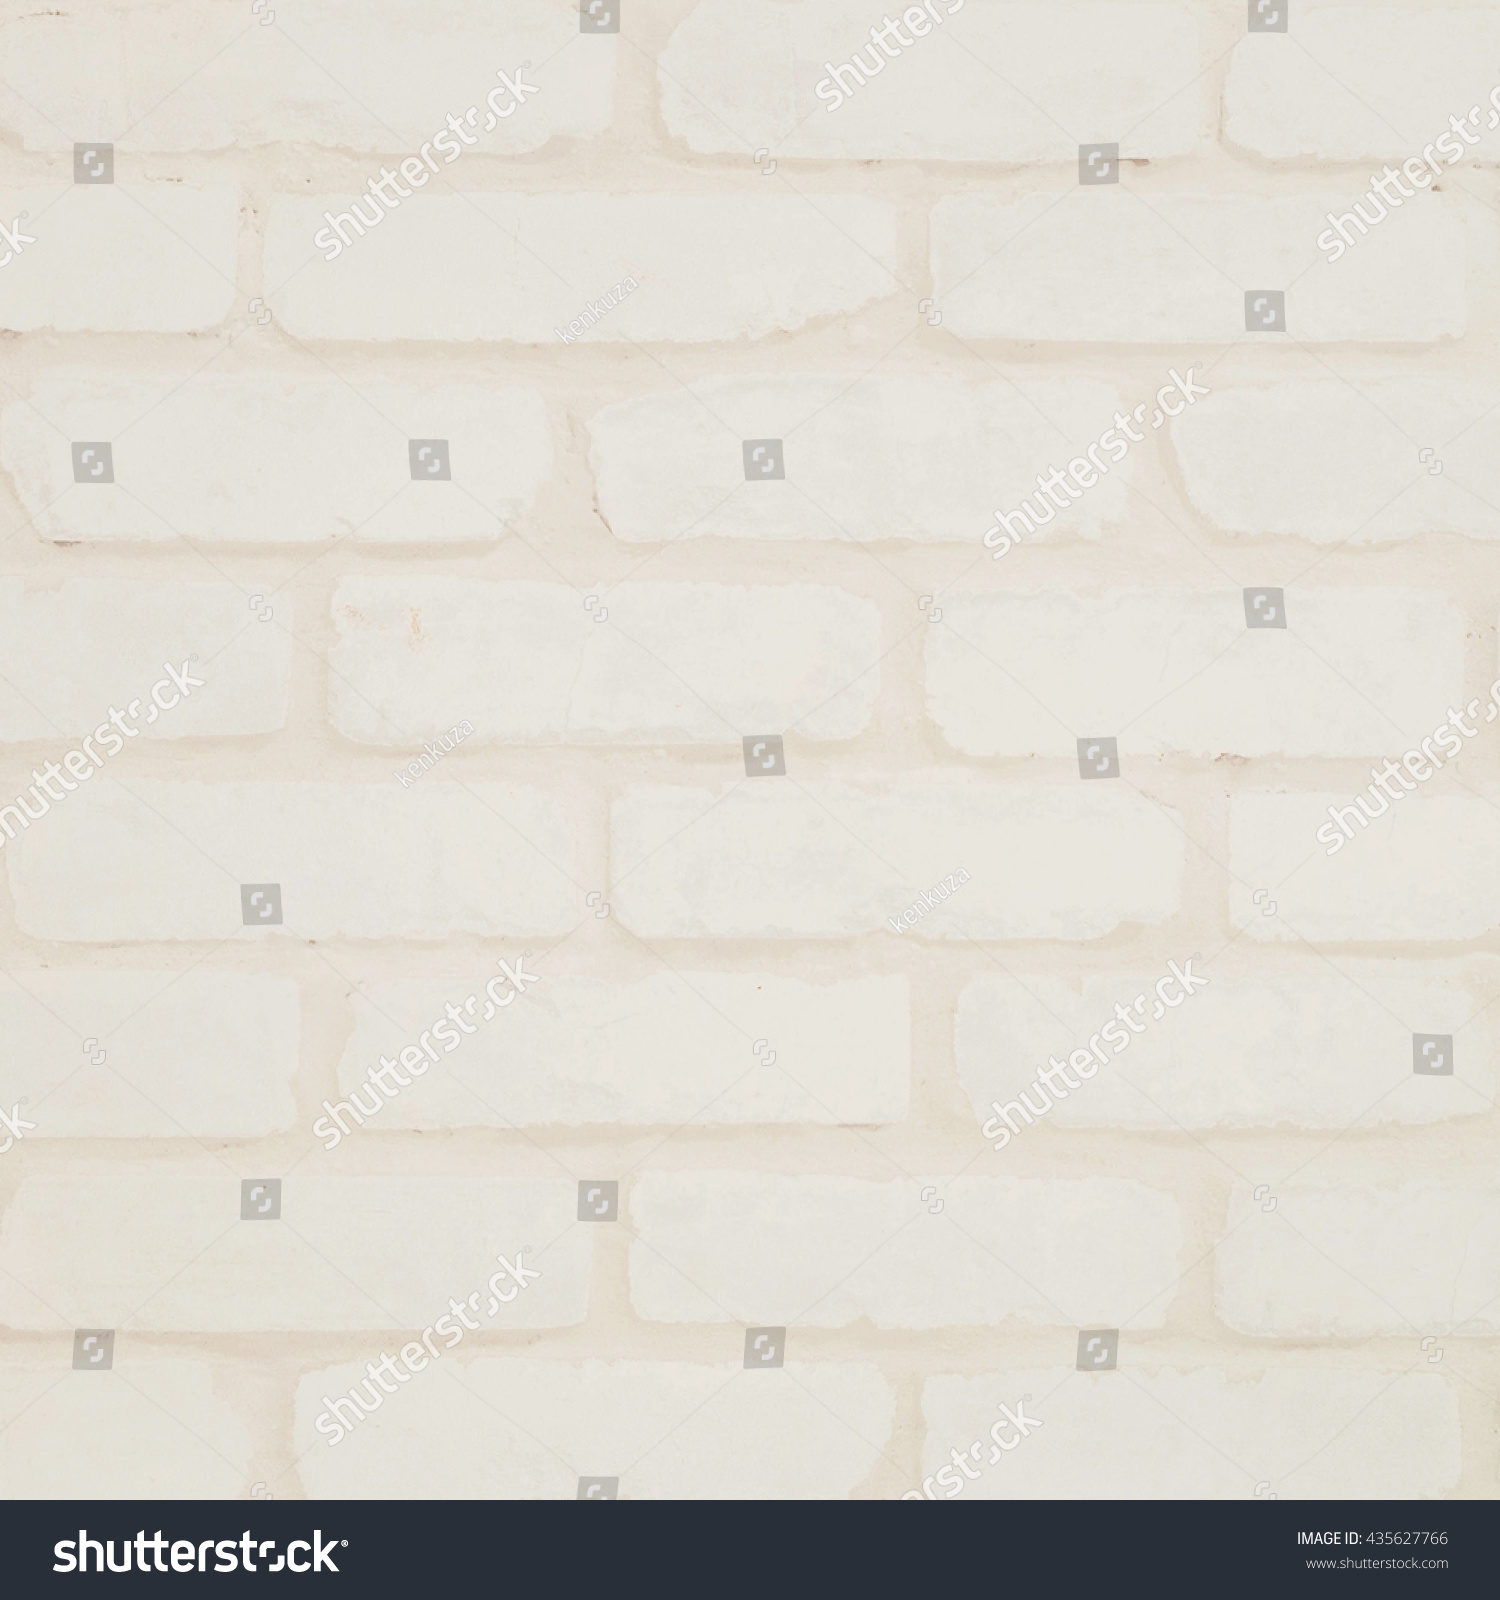 Closeup Surface Brick Wall Pattern Cream Stock Photo 435627766 ...